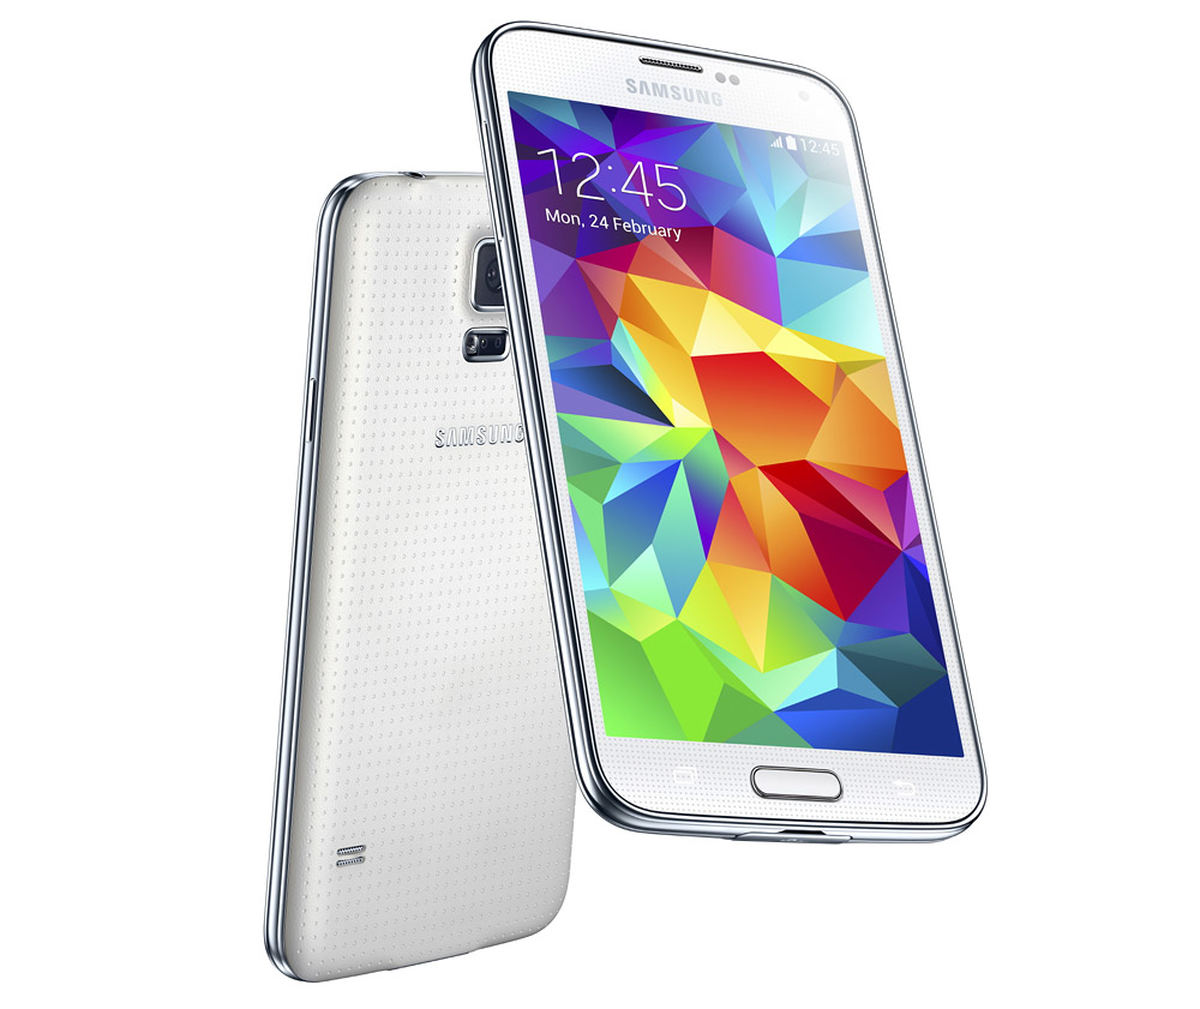 Samsung Galaxy S5 mini : Caratteristiche e Opinioni | JuzaPhoto